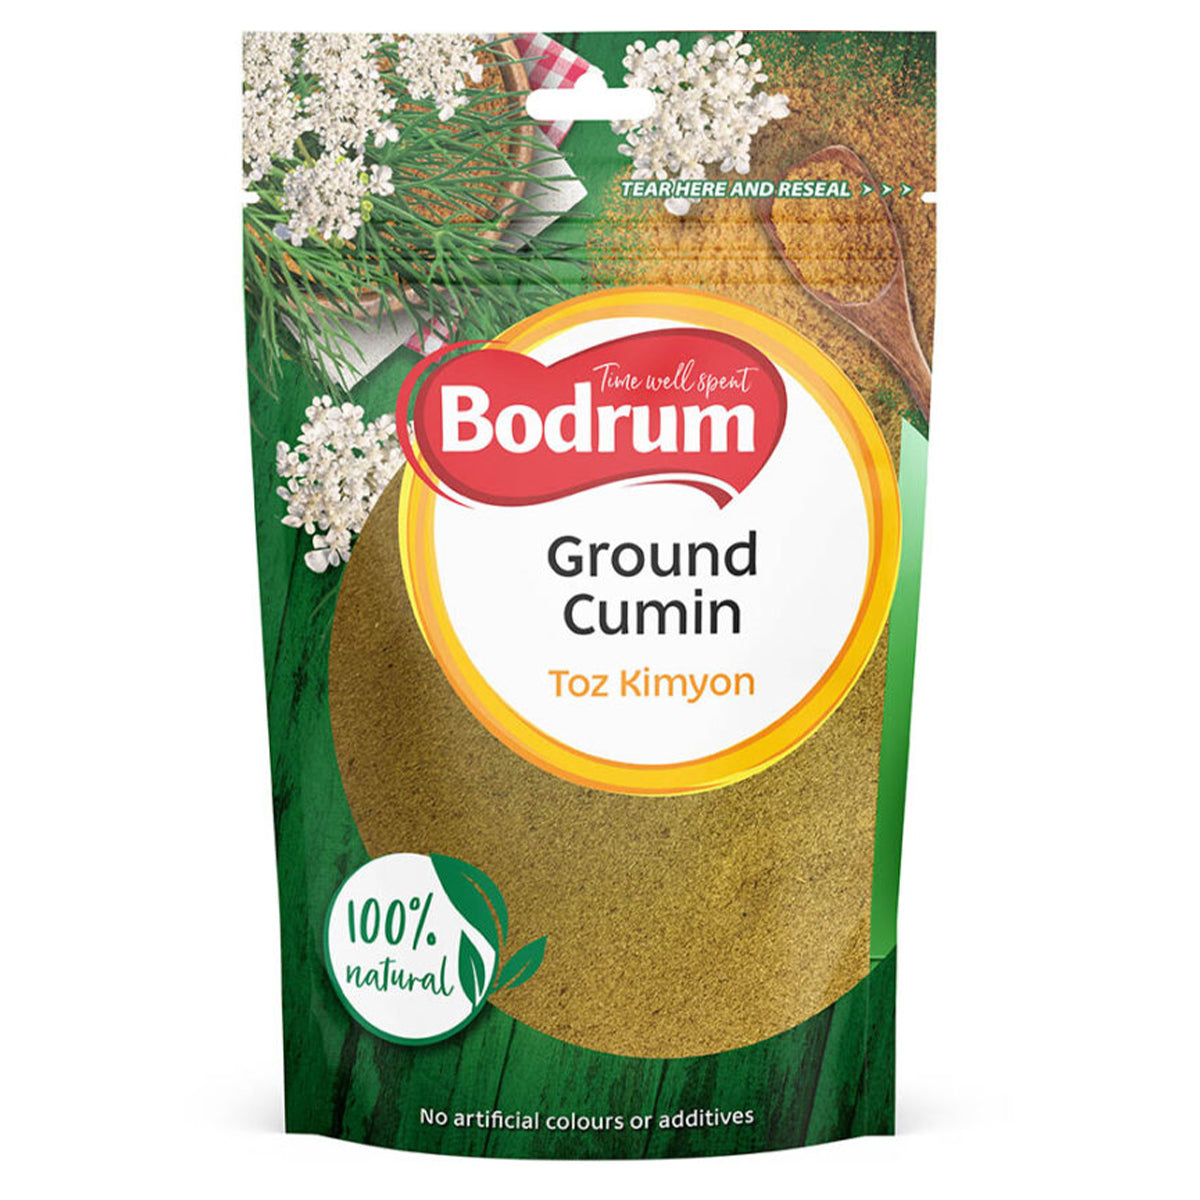 Bodrum ground cumin powder.